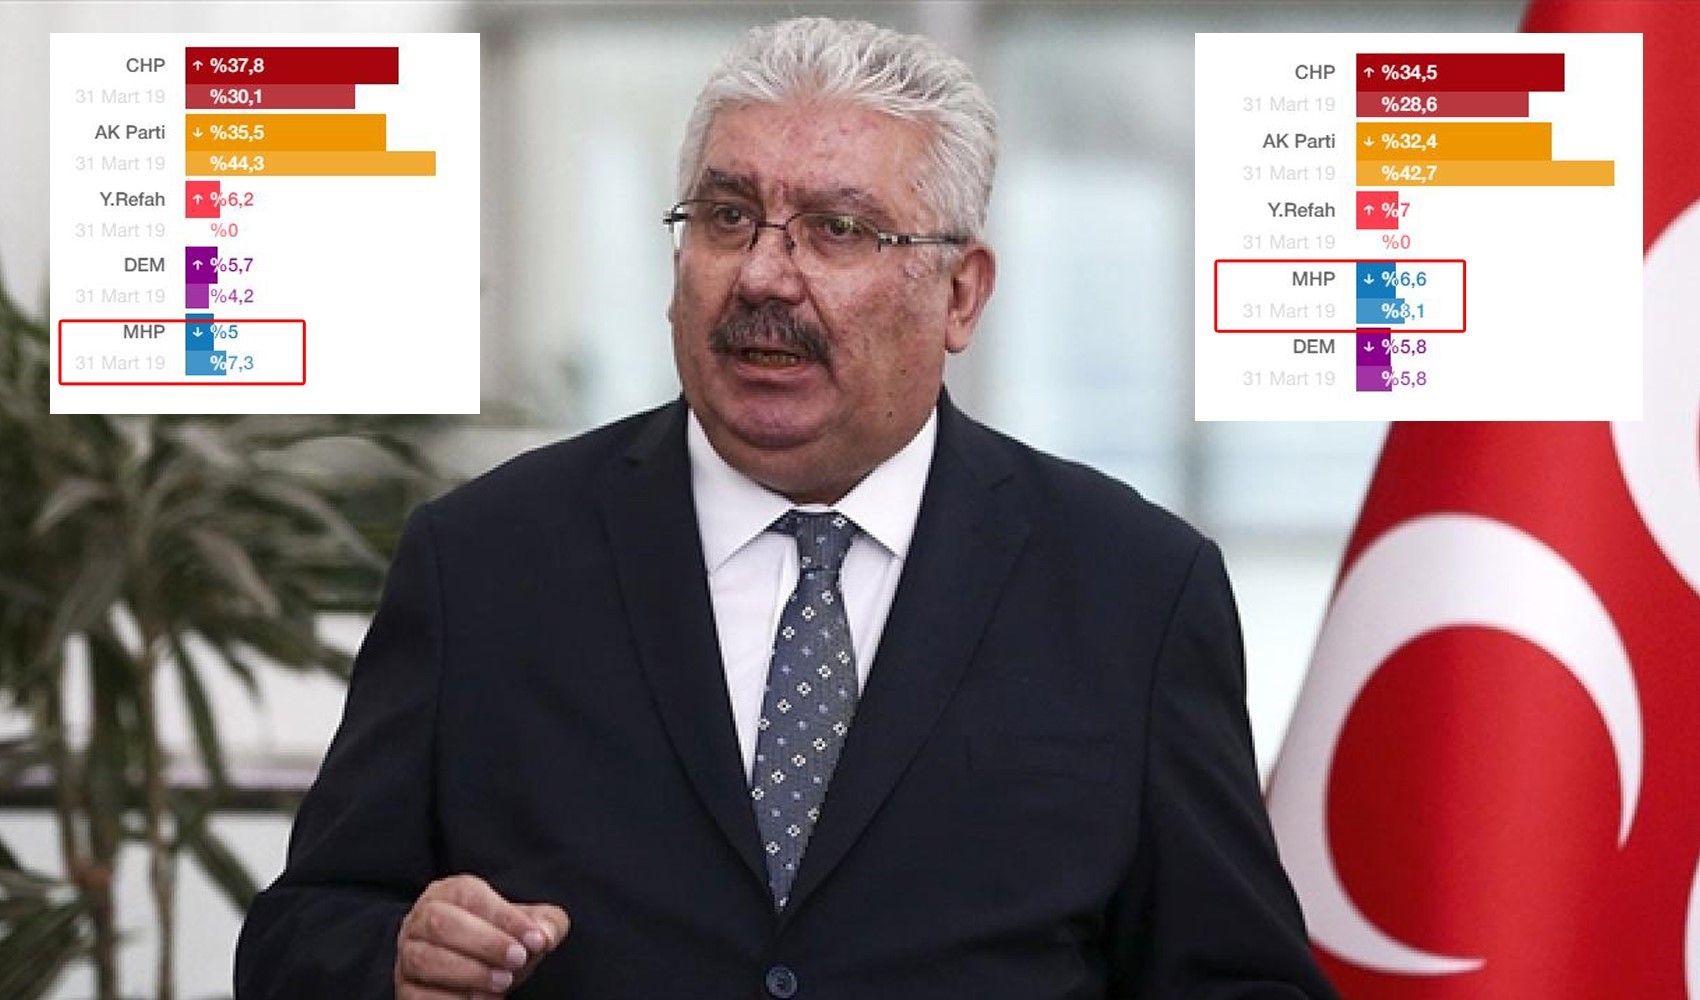 MHP'li Yalçın'dan yerel seçim açıklaması: 'MHP 3. parti konumundadır'